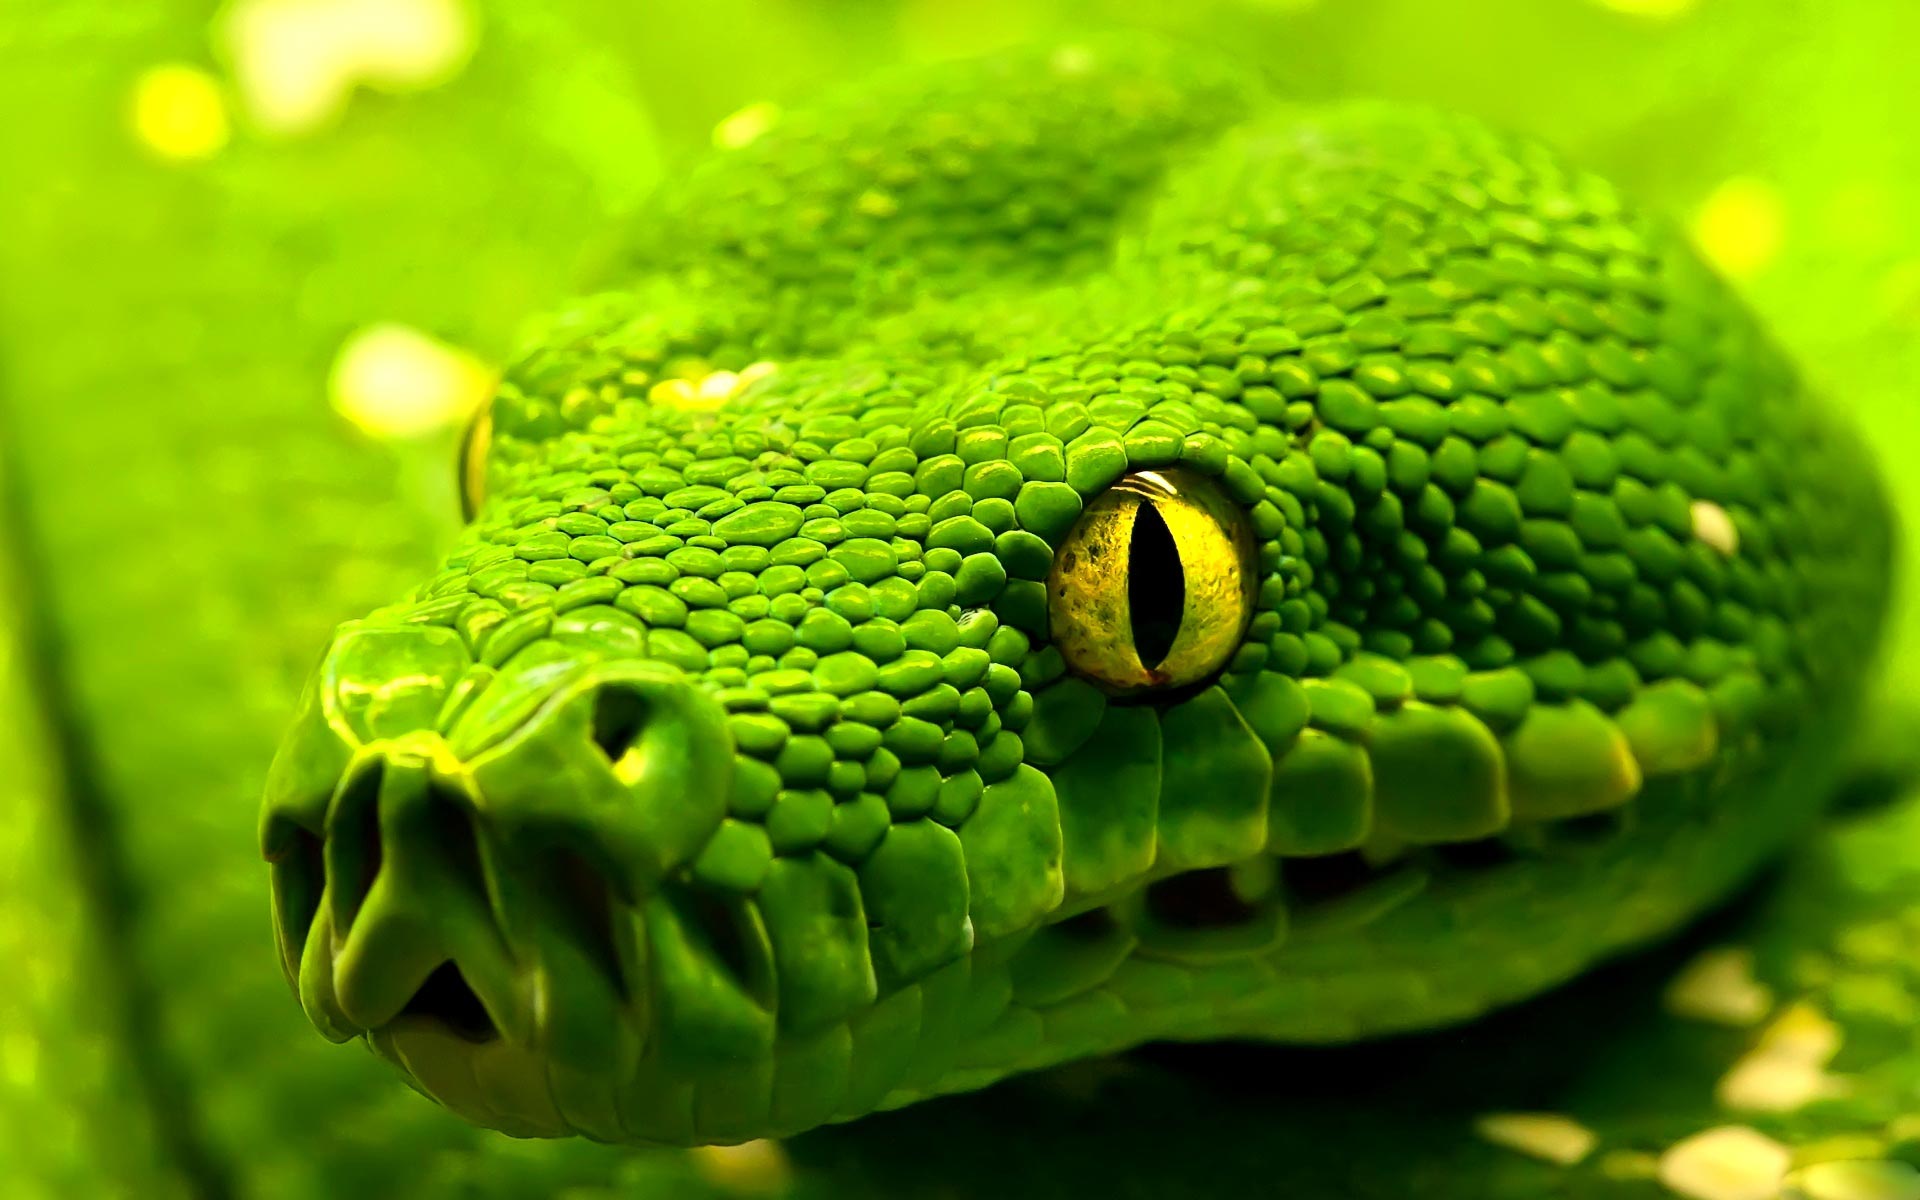 HD Wallpaper Cool Desktop Background Image Widescreen Green Snake